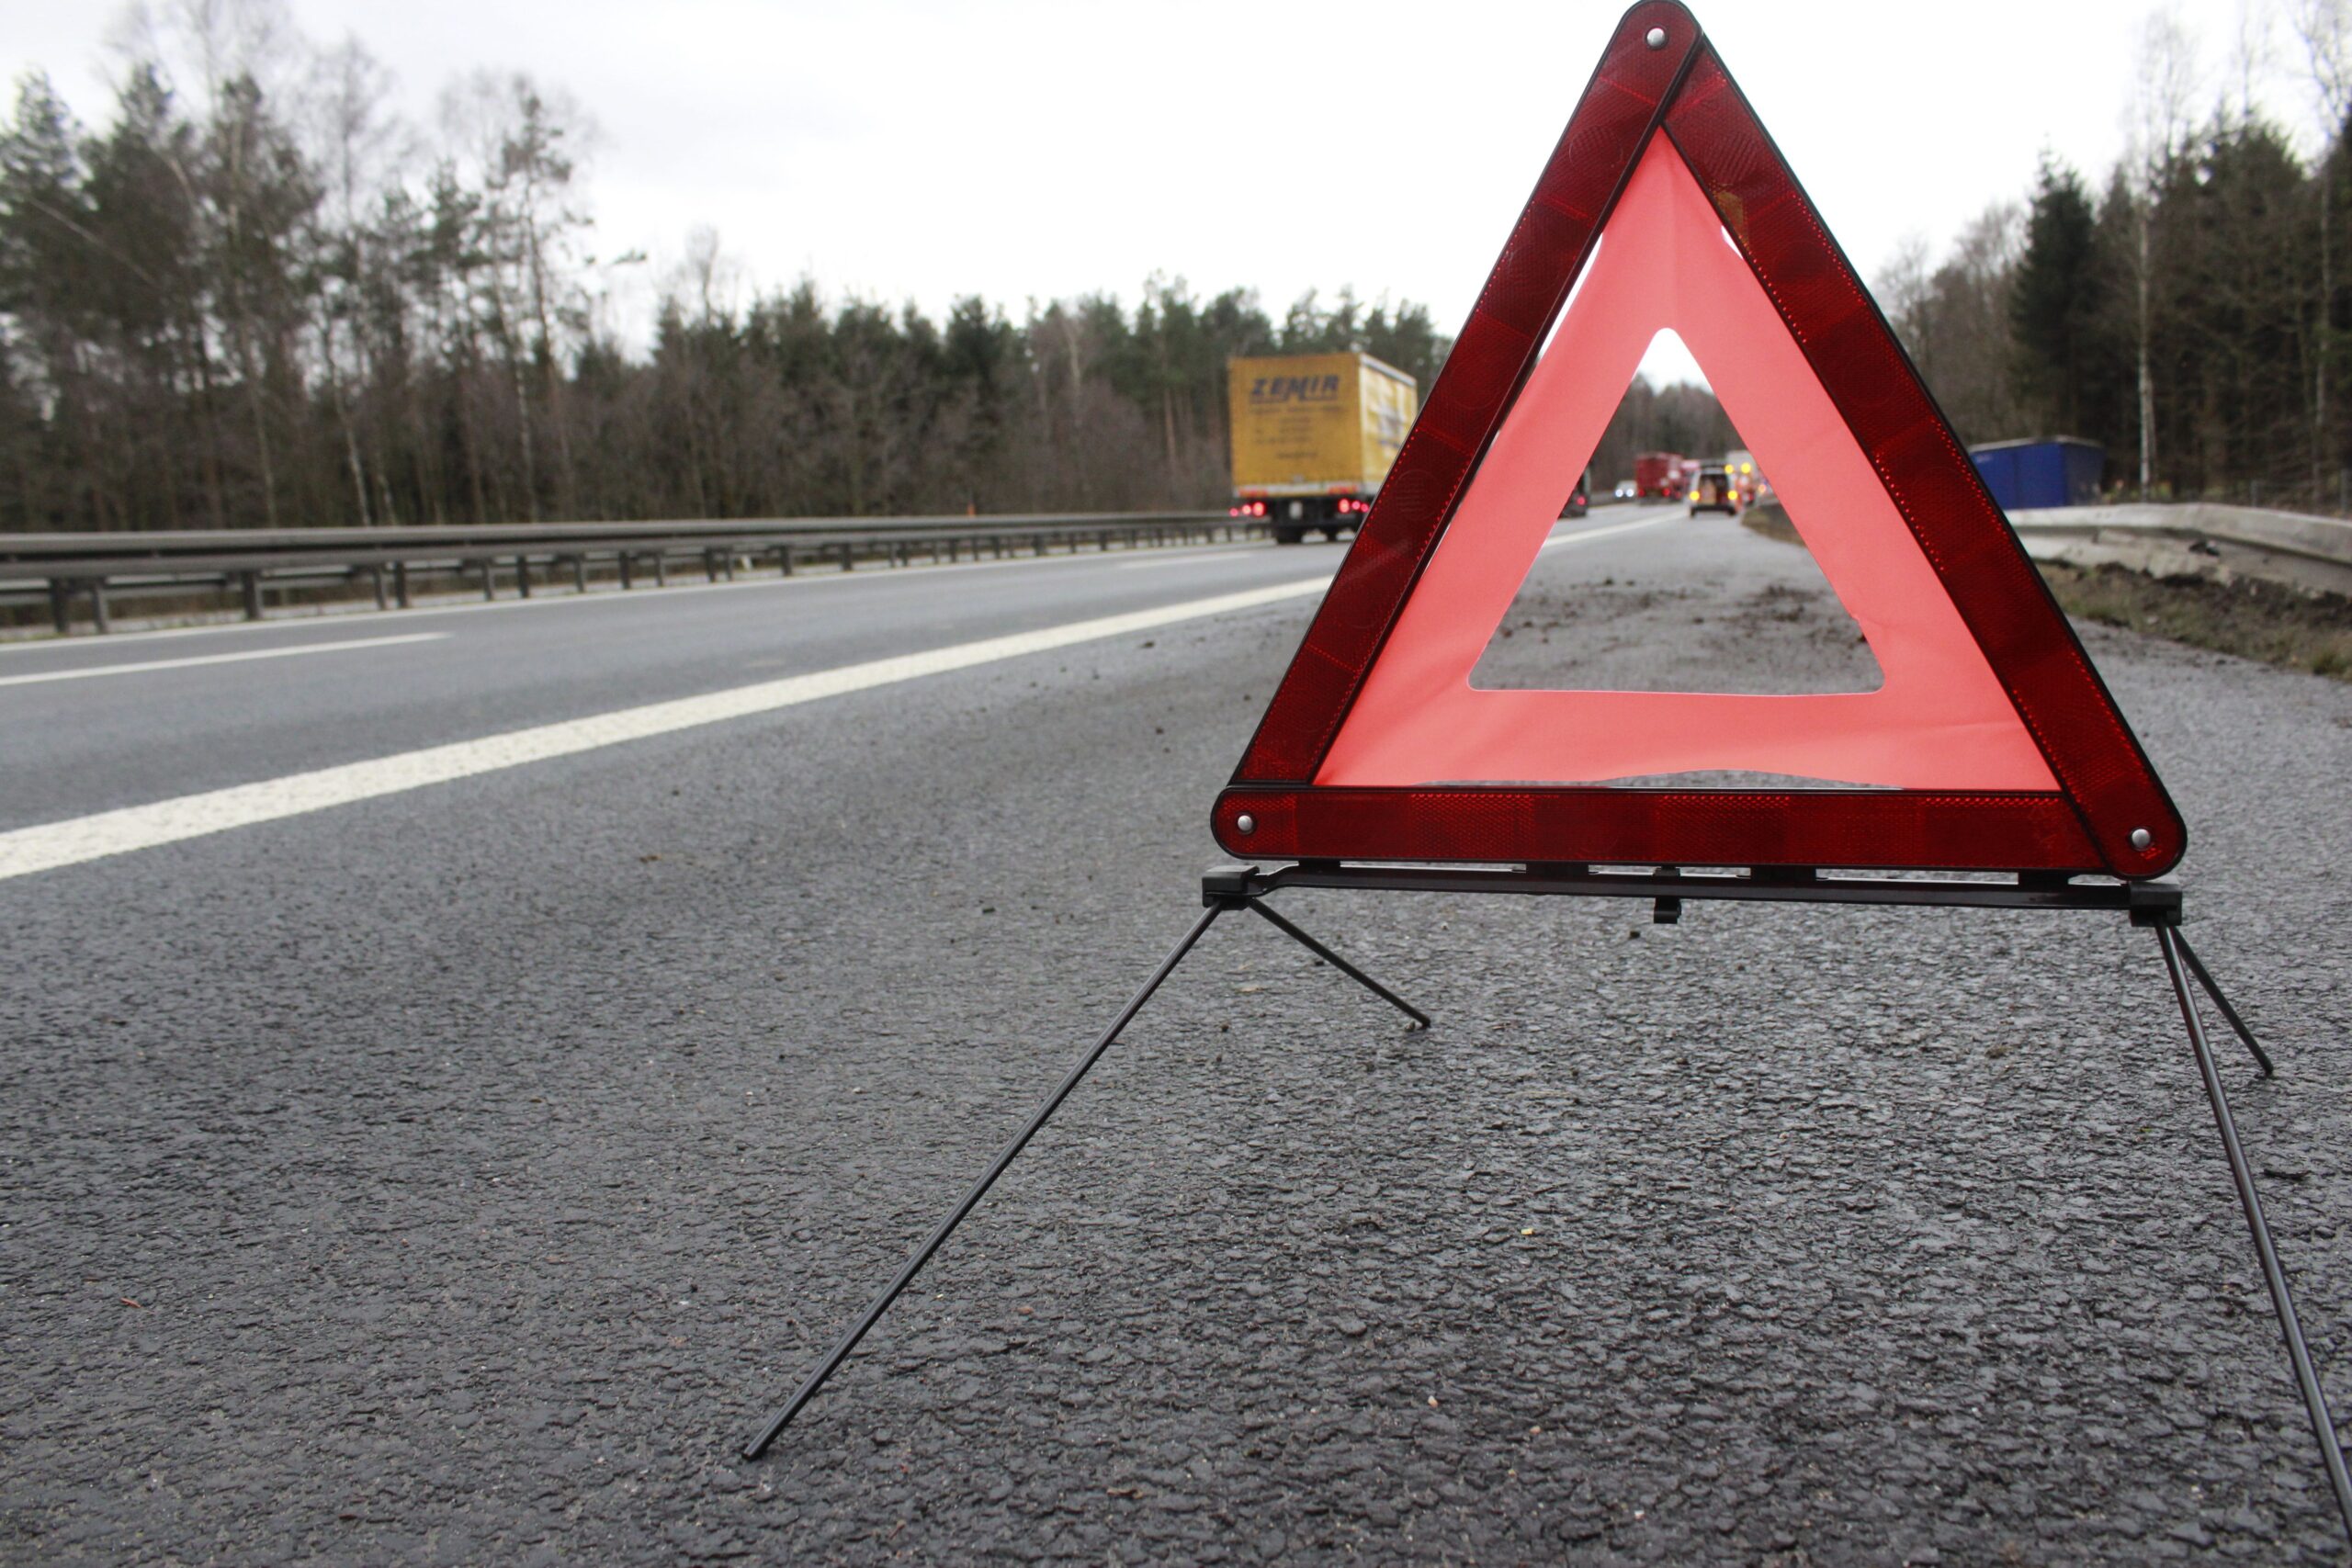 Utrudnienia na trasie Stęszew – Buk, droga zablokowana po wypadku